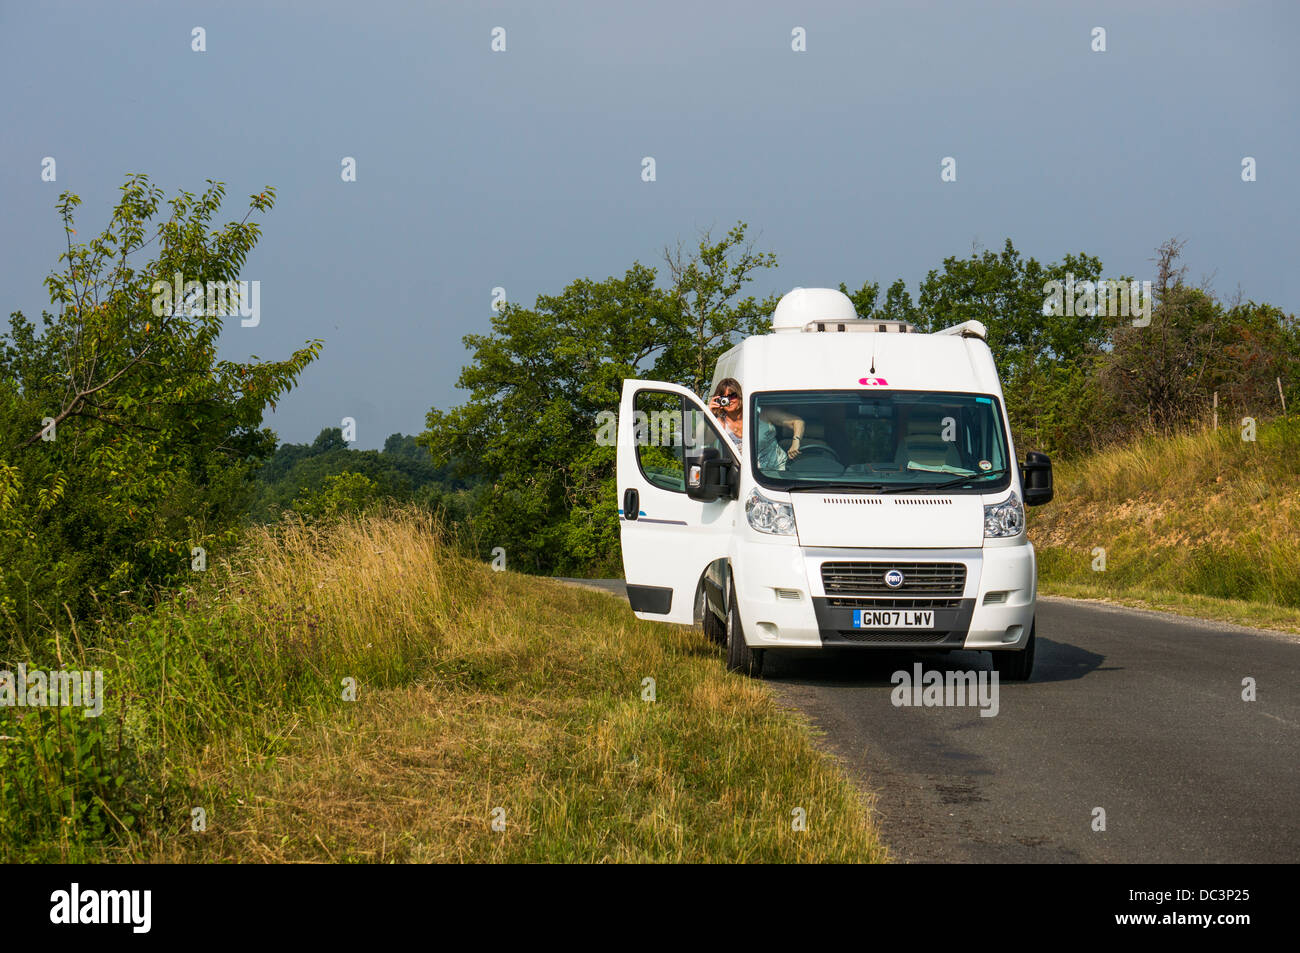 Une dame camping conducteur arrêté au bord de la route pour prendre une photo, dans la région de Trémolat Dordogne, sud ouest de la France, l'Europe. Banque D'Images